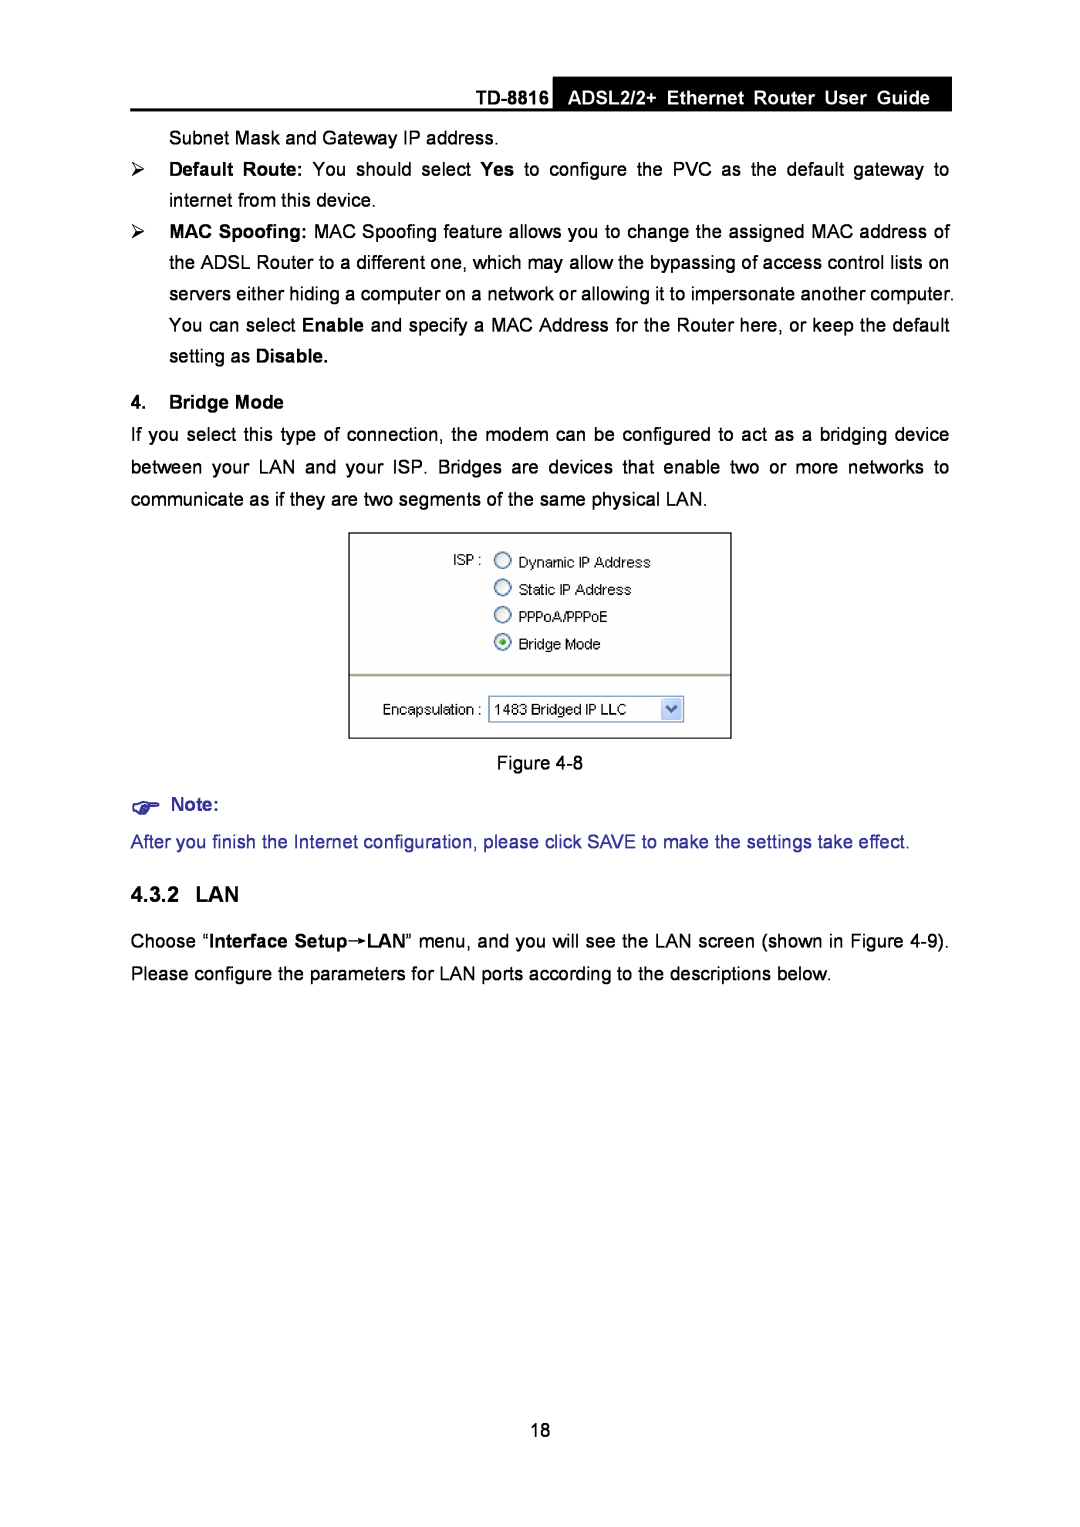 TP-Link TD-8816 manual 4.3.2 LAN, ADSL2/2+ Ethernet Router User Guide, Bridge Mode 